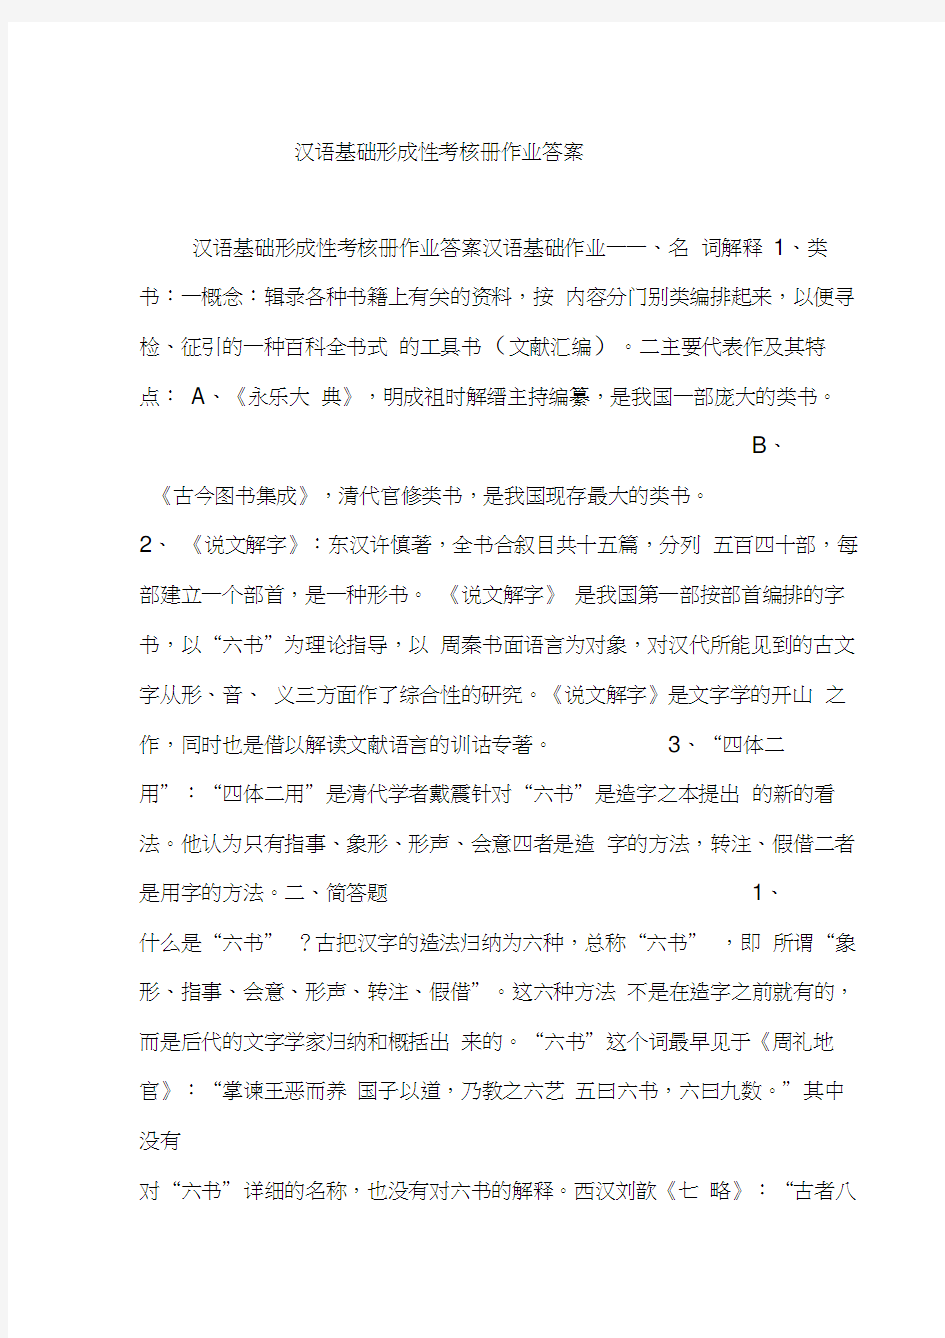 汉语基础形成性考核册作业答案资料